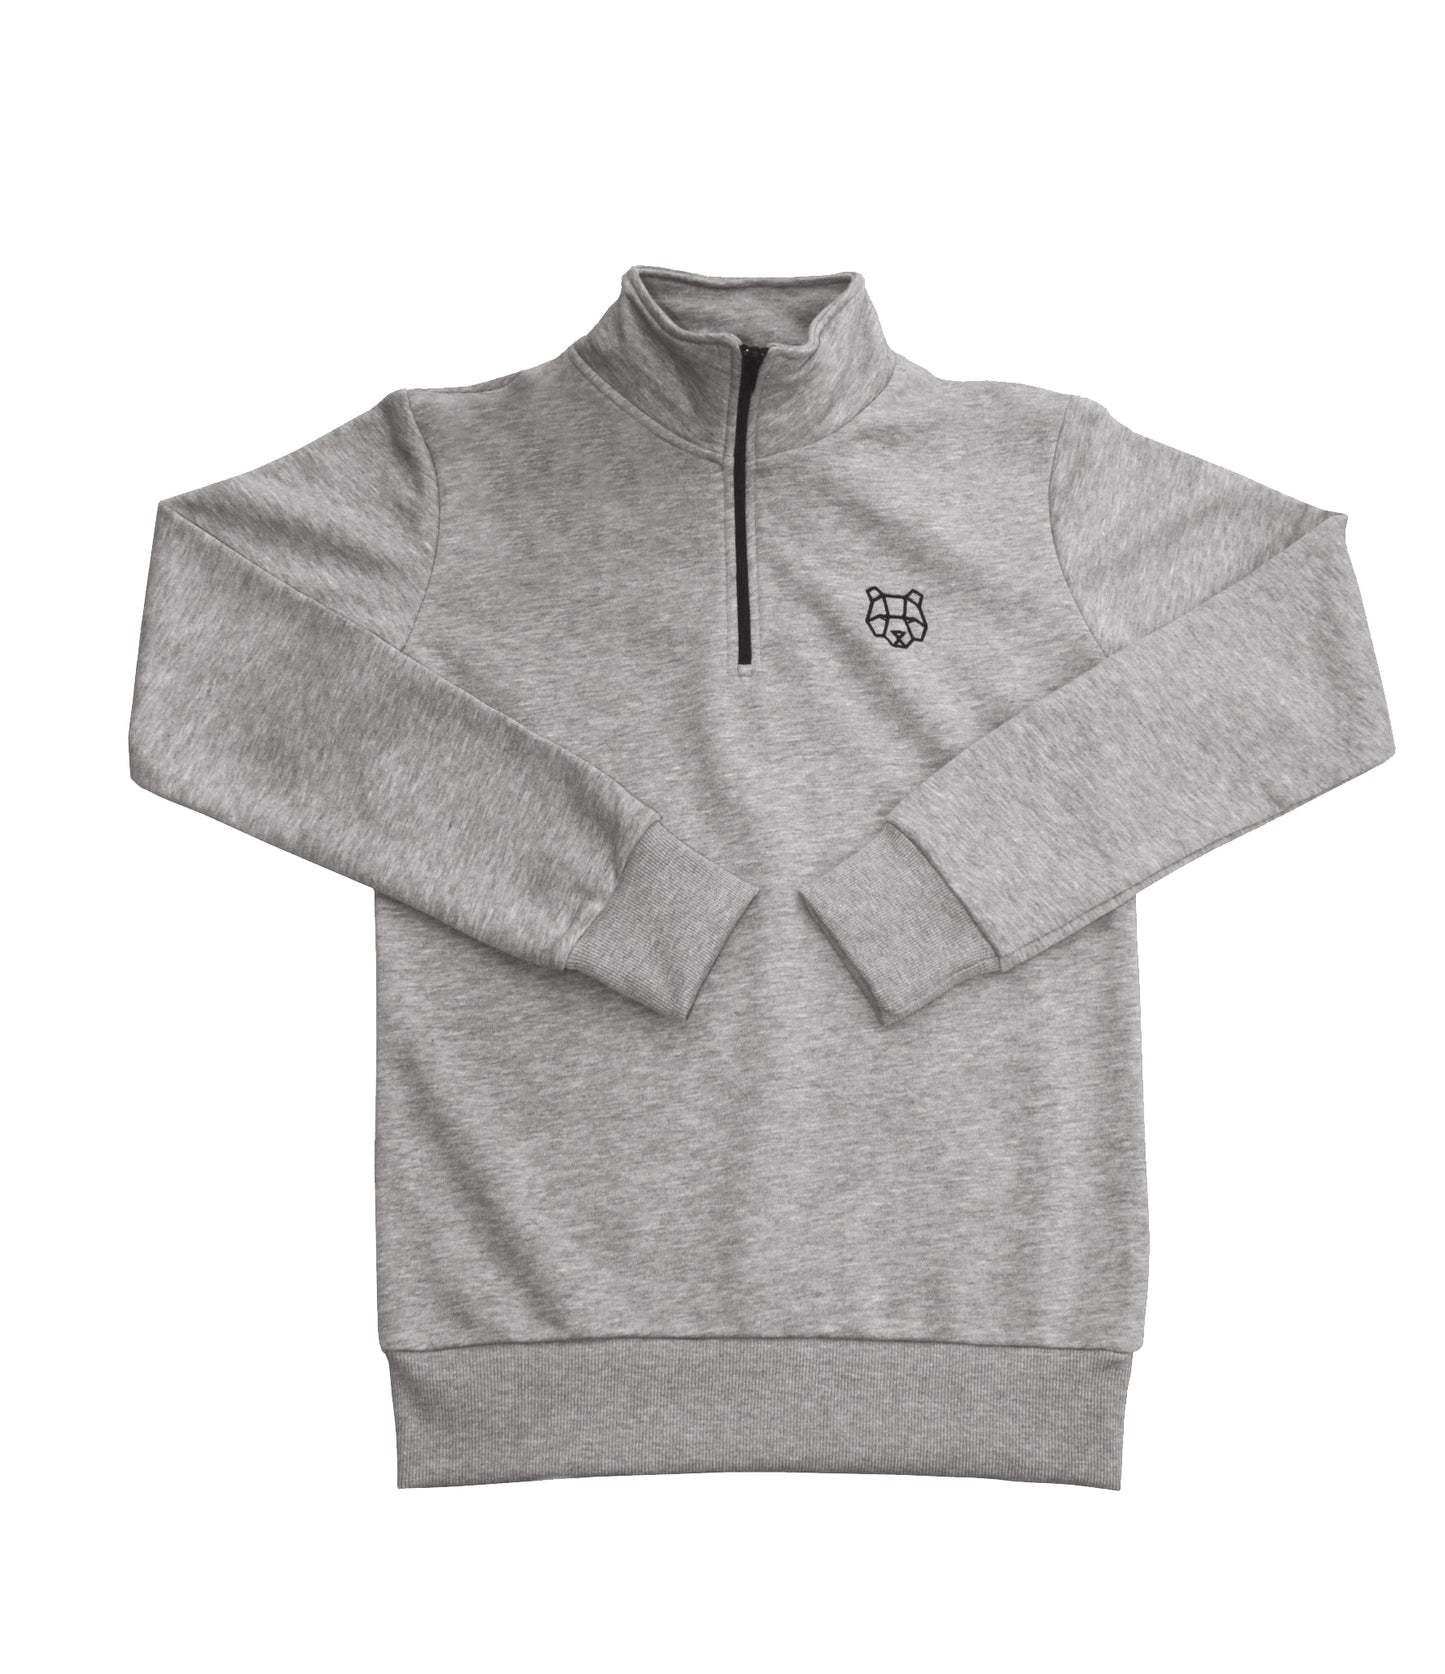 Cultured Collection 1/4 Zip Sweatshirt in Grey